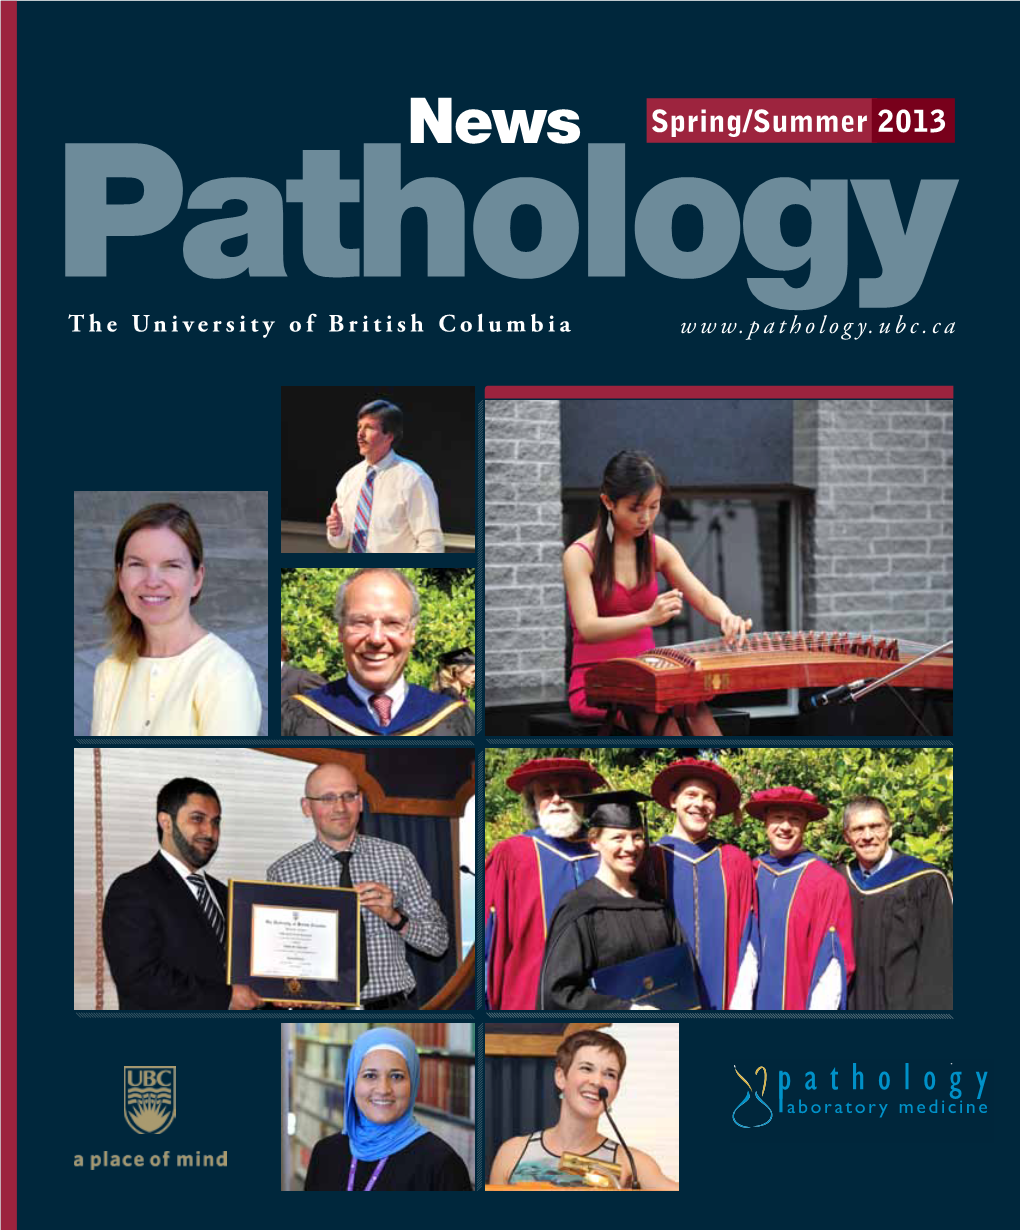 Pathology the University of British Columbia